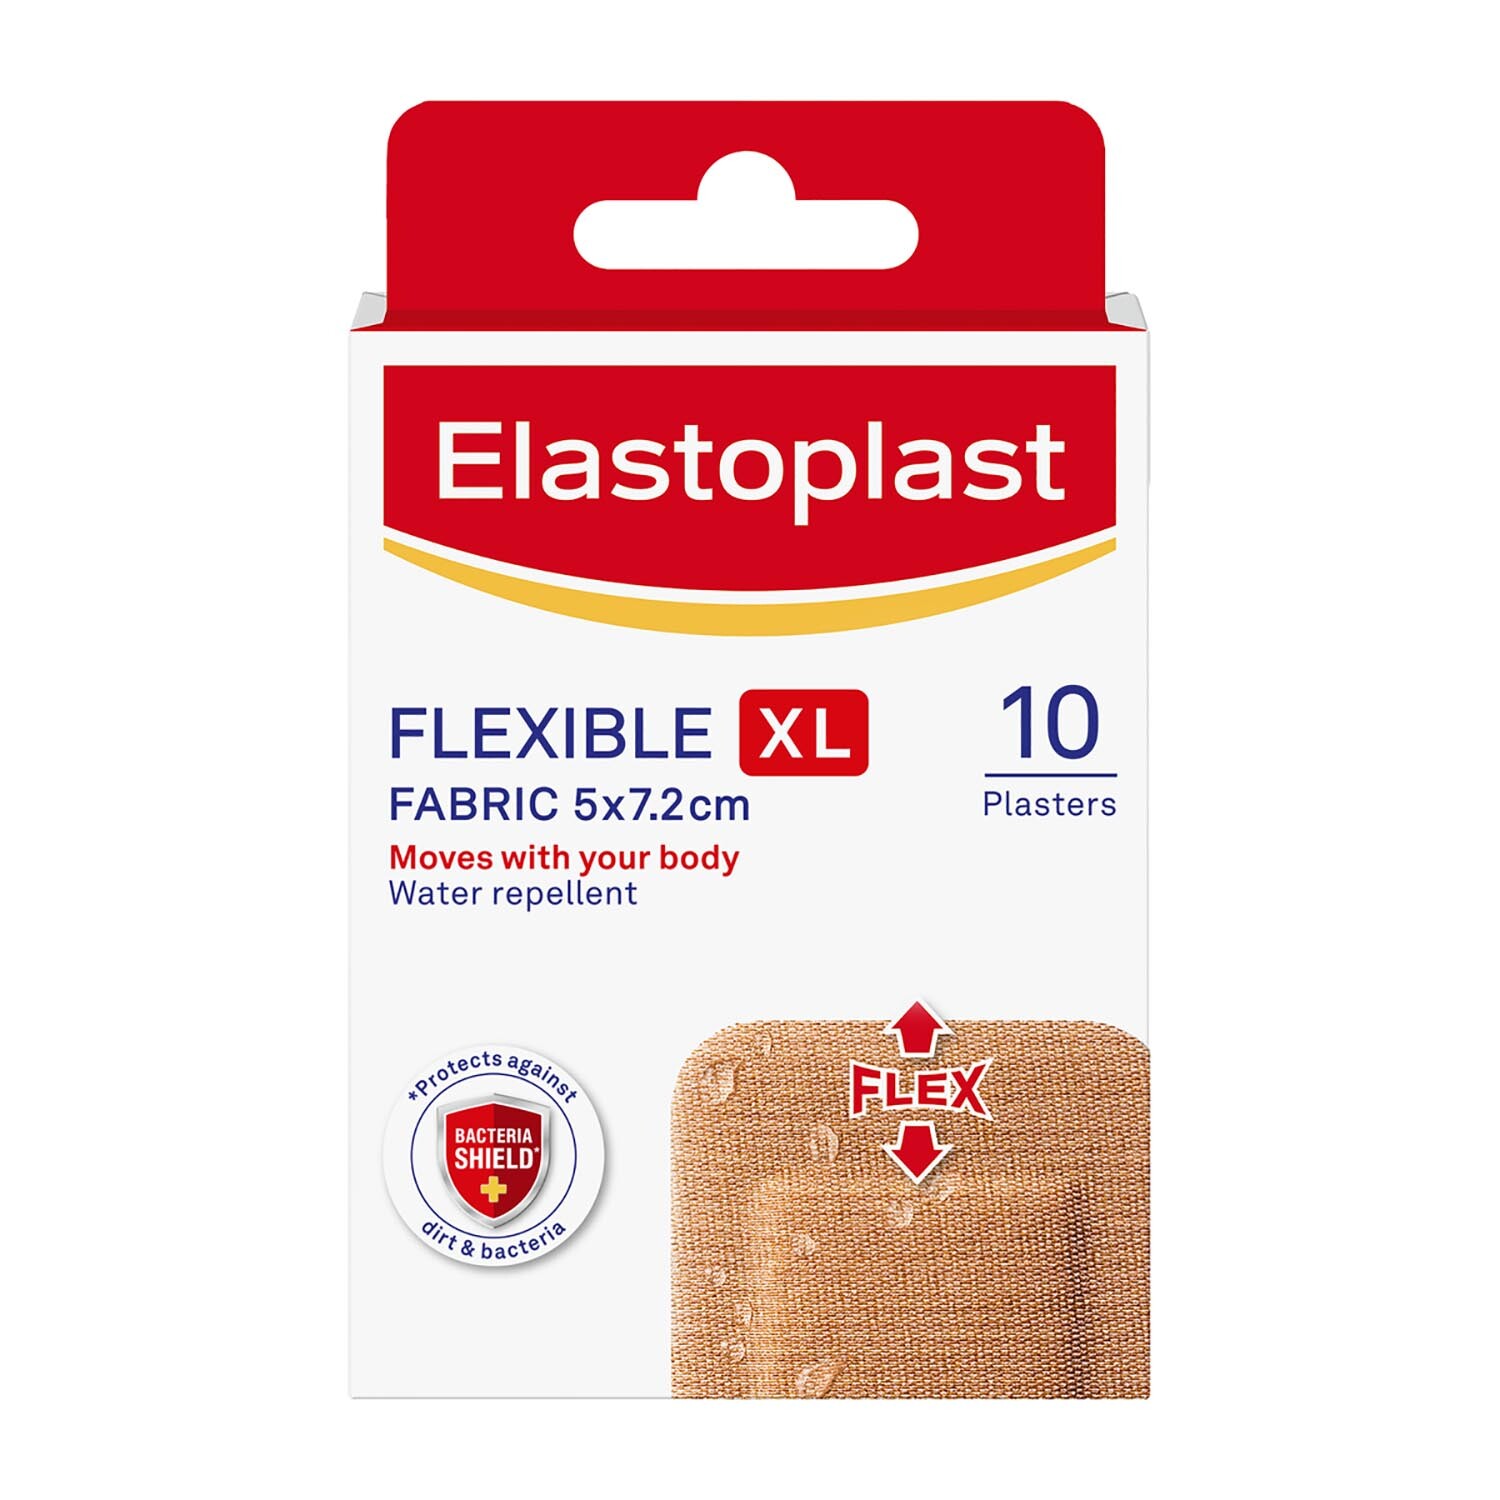 Elastoplast Flexible Extra Large Fabric Plaster 10 Pack Image